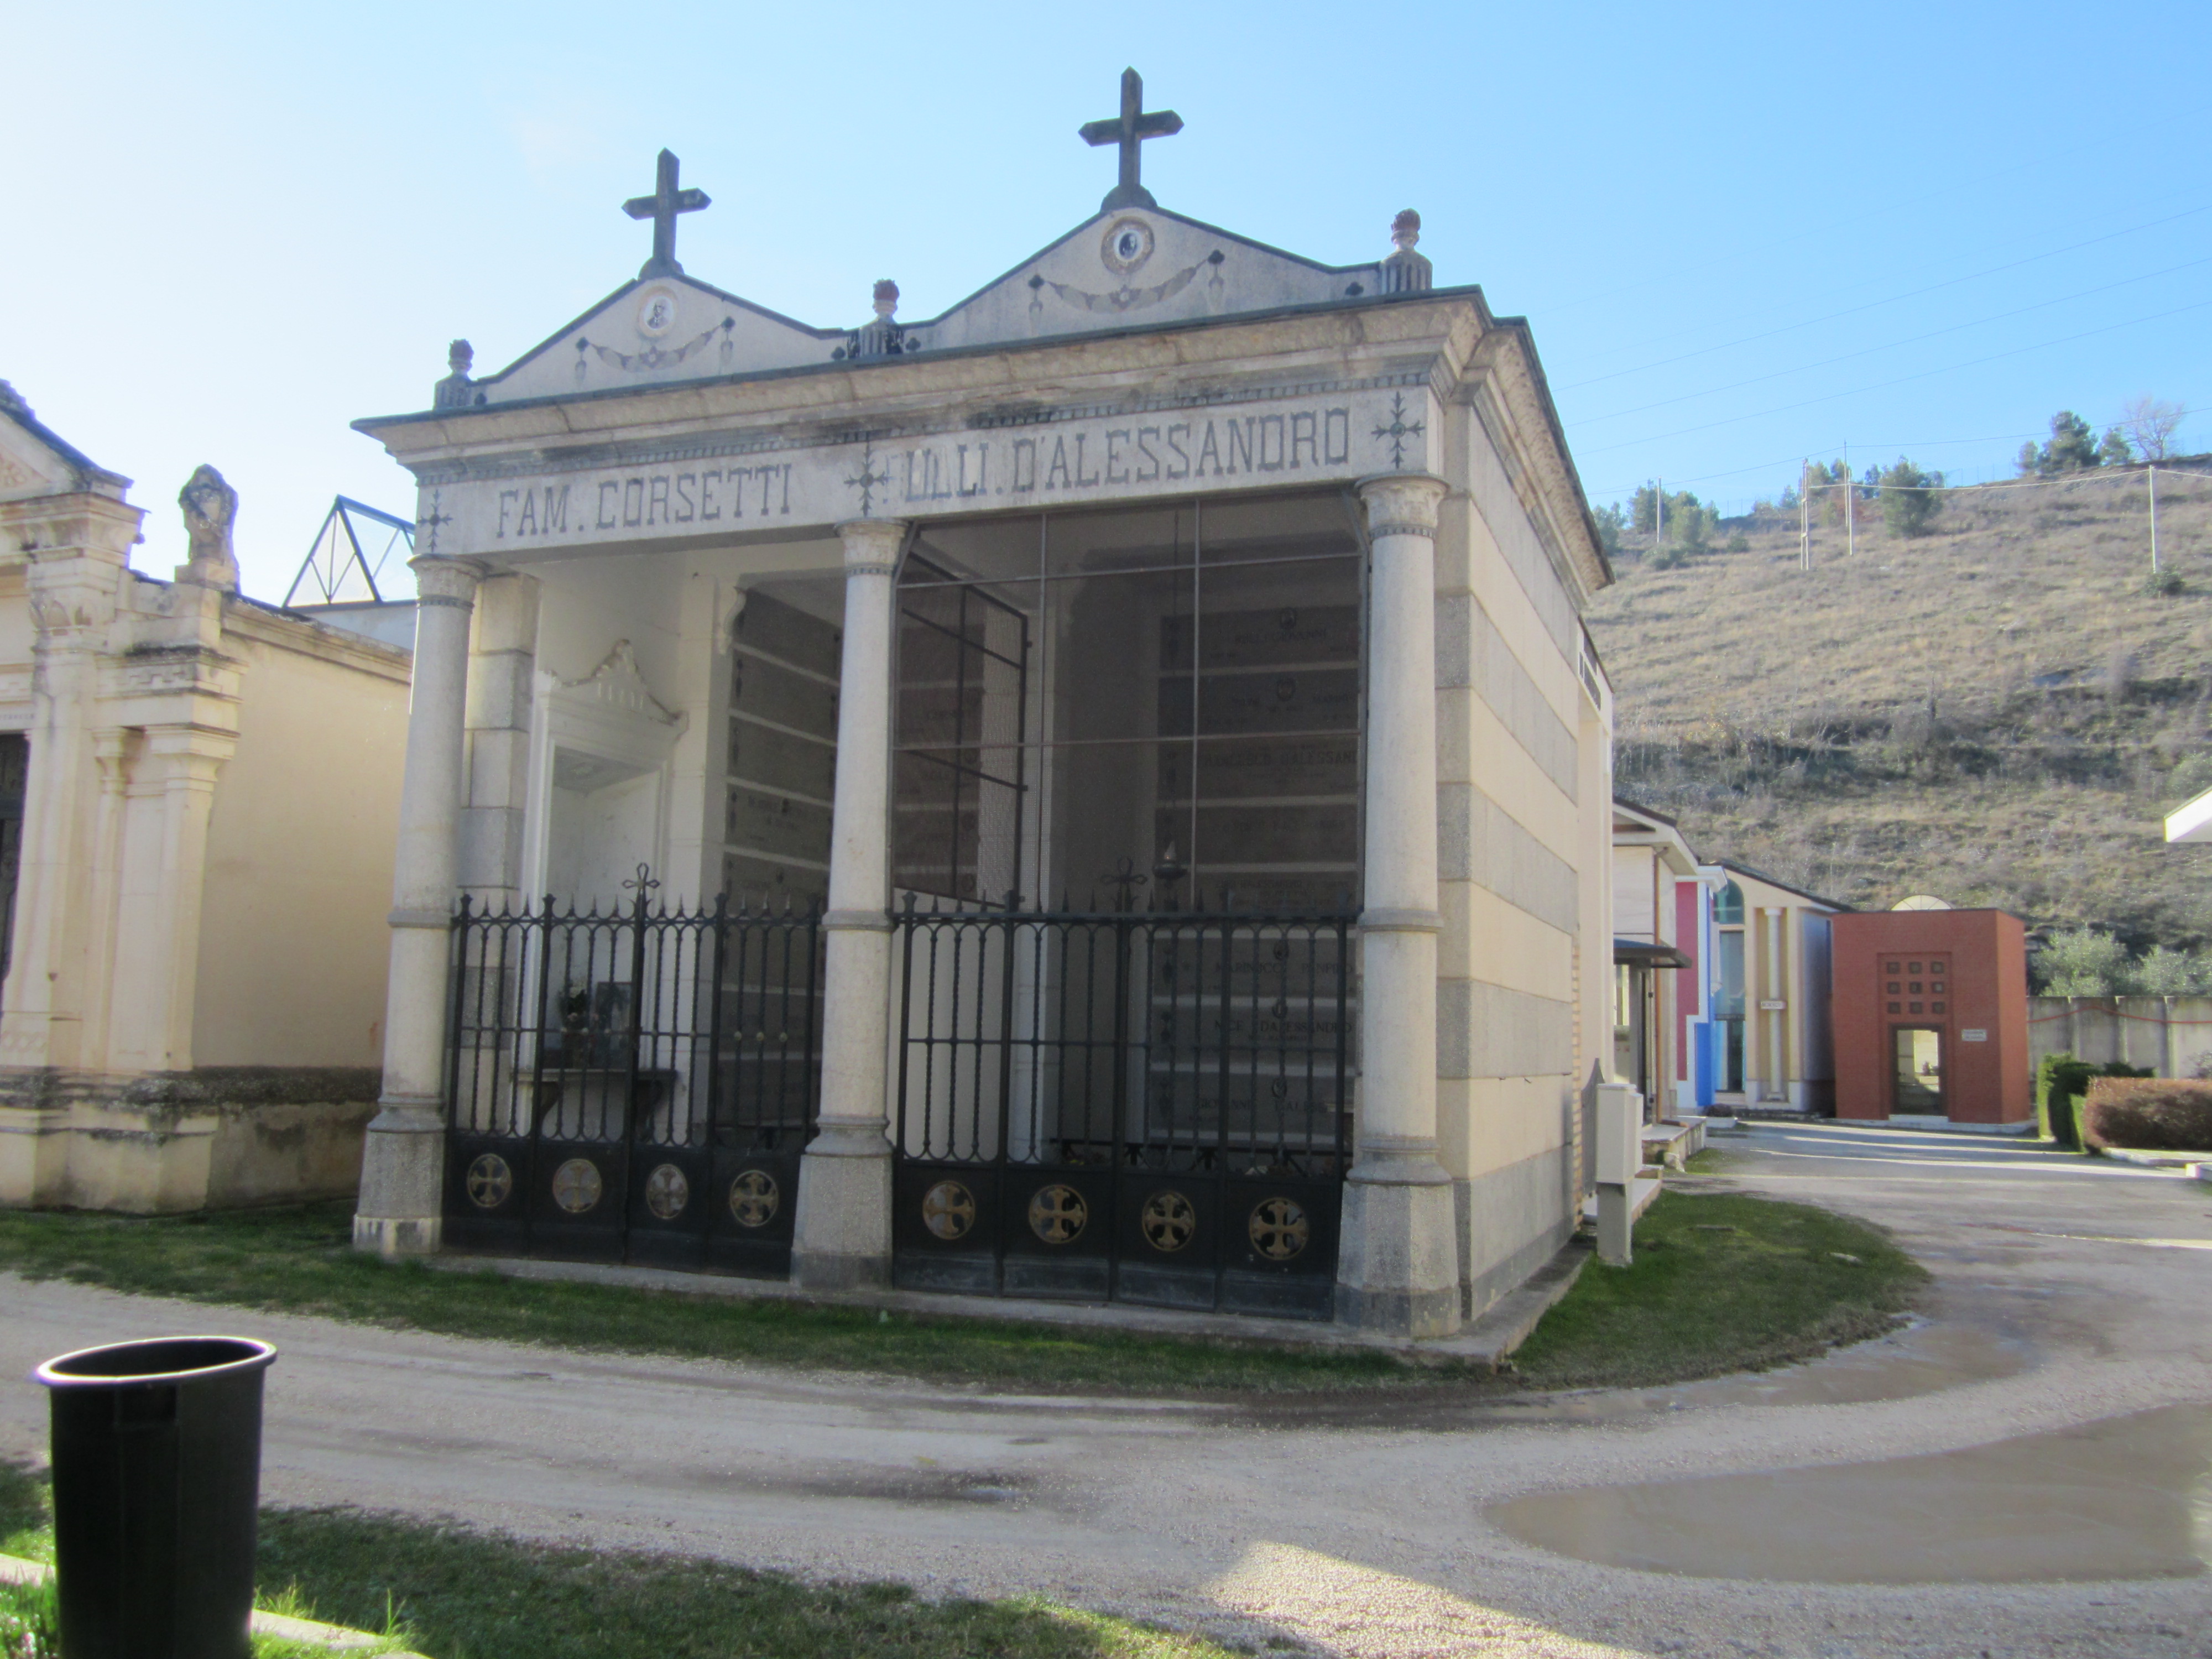 Cappella cimiteriale Famiglia Corsetti Rulli D'Alessandro (cimitero, monumentale) - Sulmona (AQ)  (XX, prima metà)